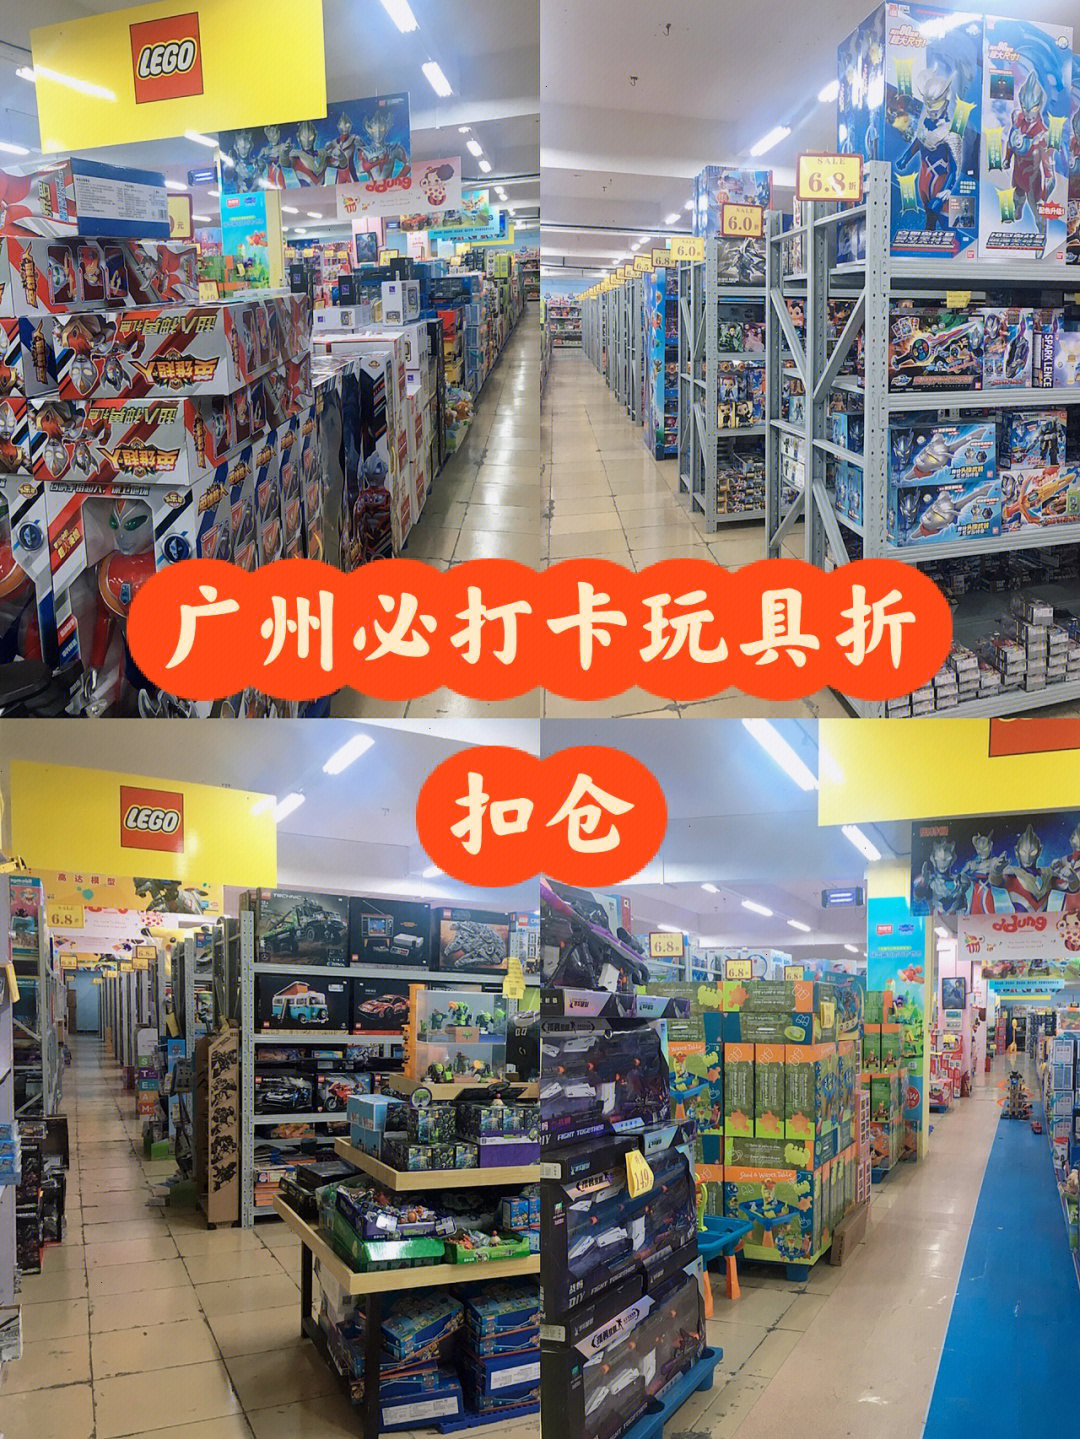 国庆假期必打卡广州1千方超大玩具仓